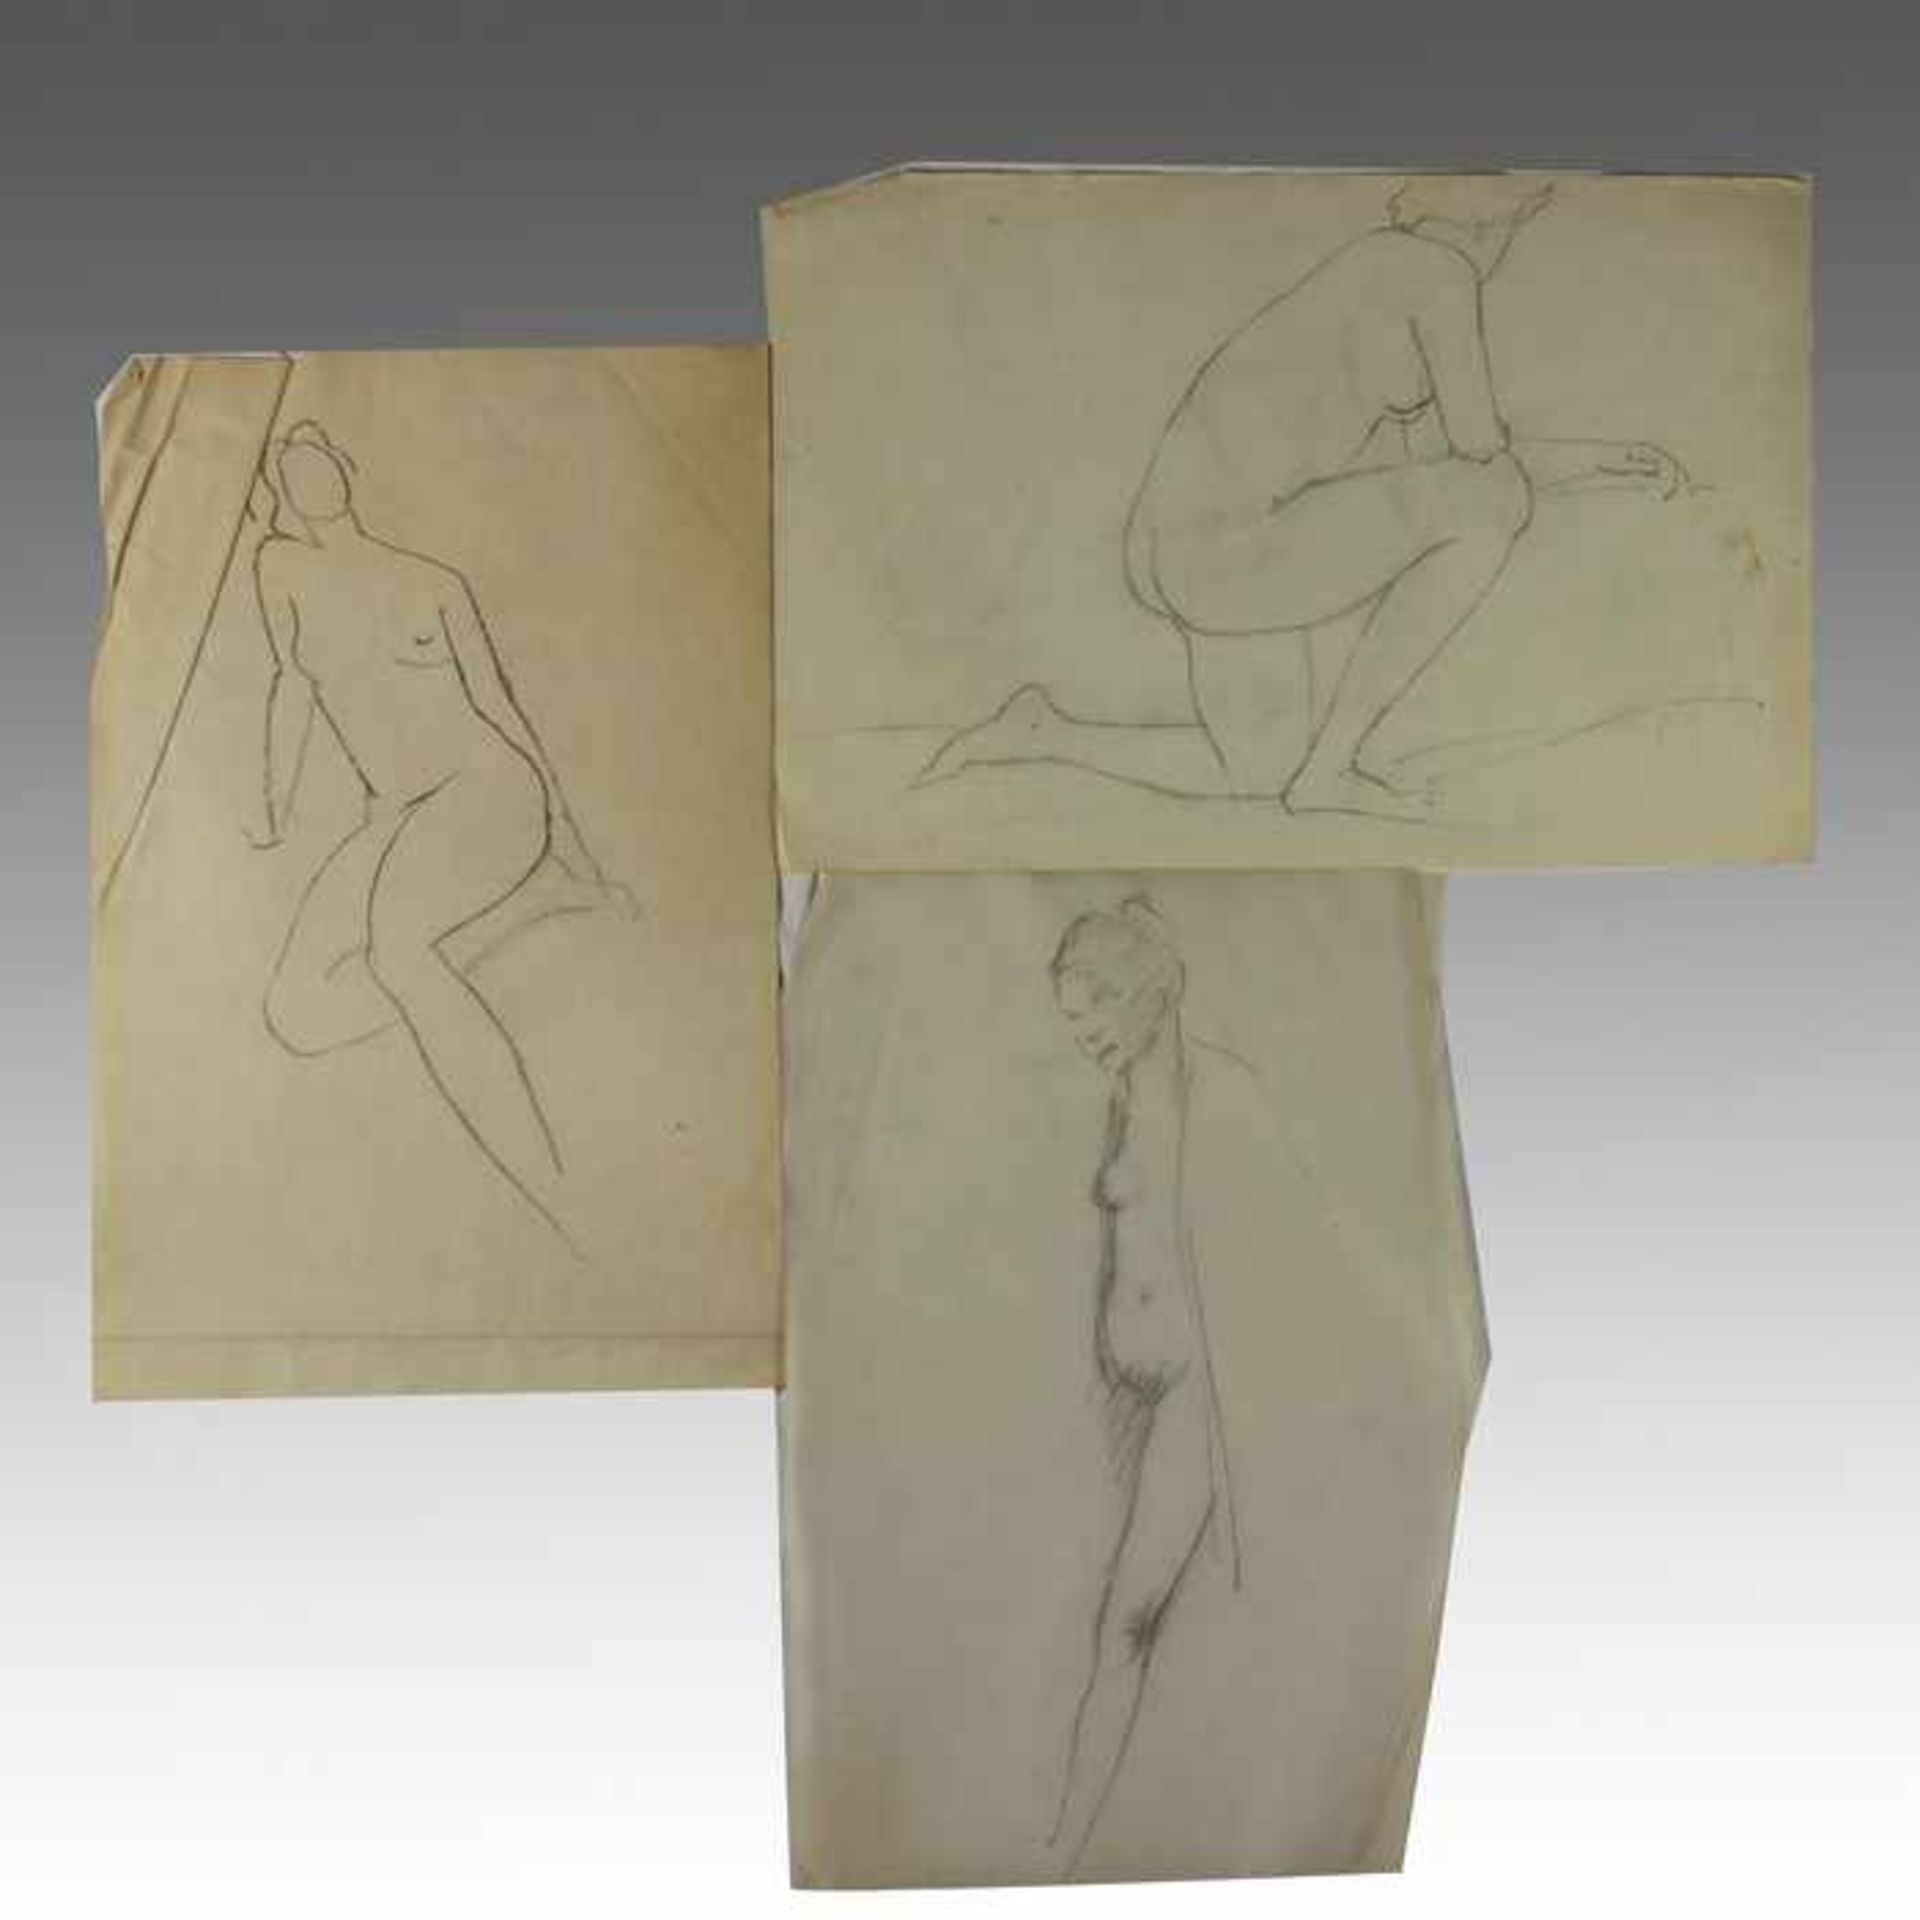 Hemmerlein, Karl7 Zeichnungen, Skizzen/Studien, Frauenakte in unterschiedlichen Haltungen, - Bild 2 aus 2